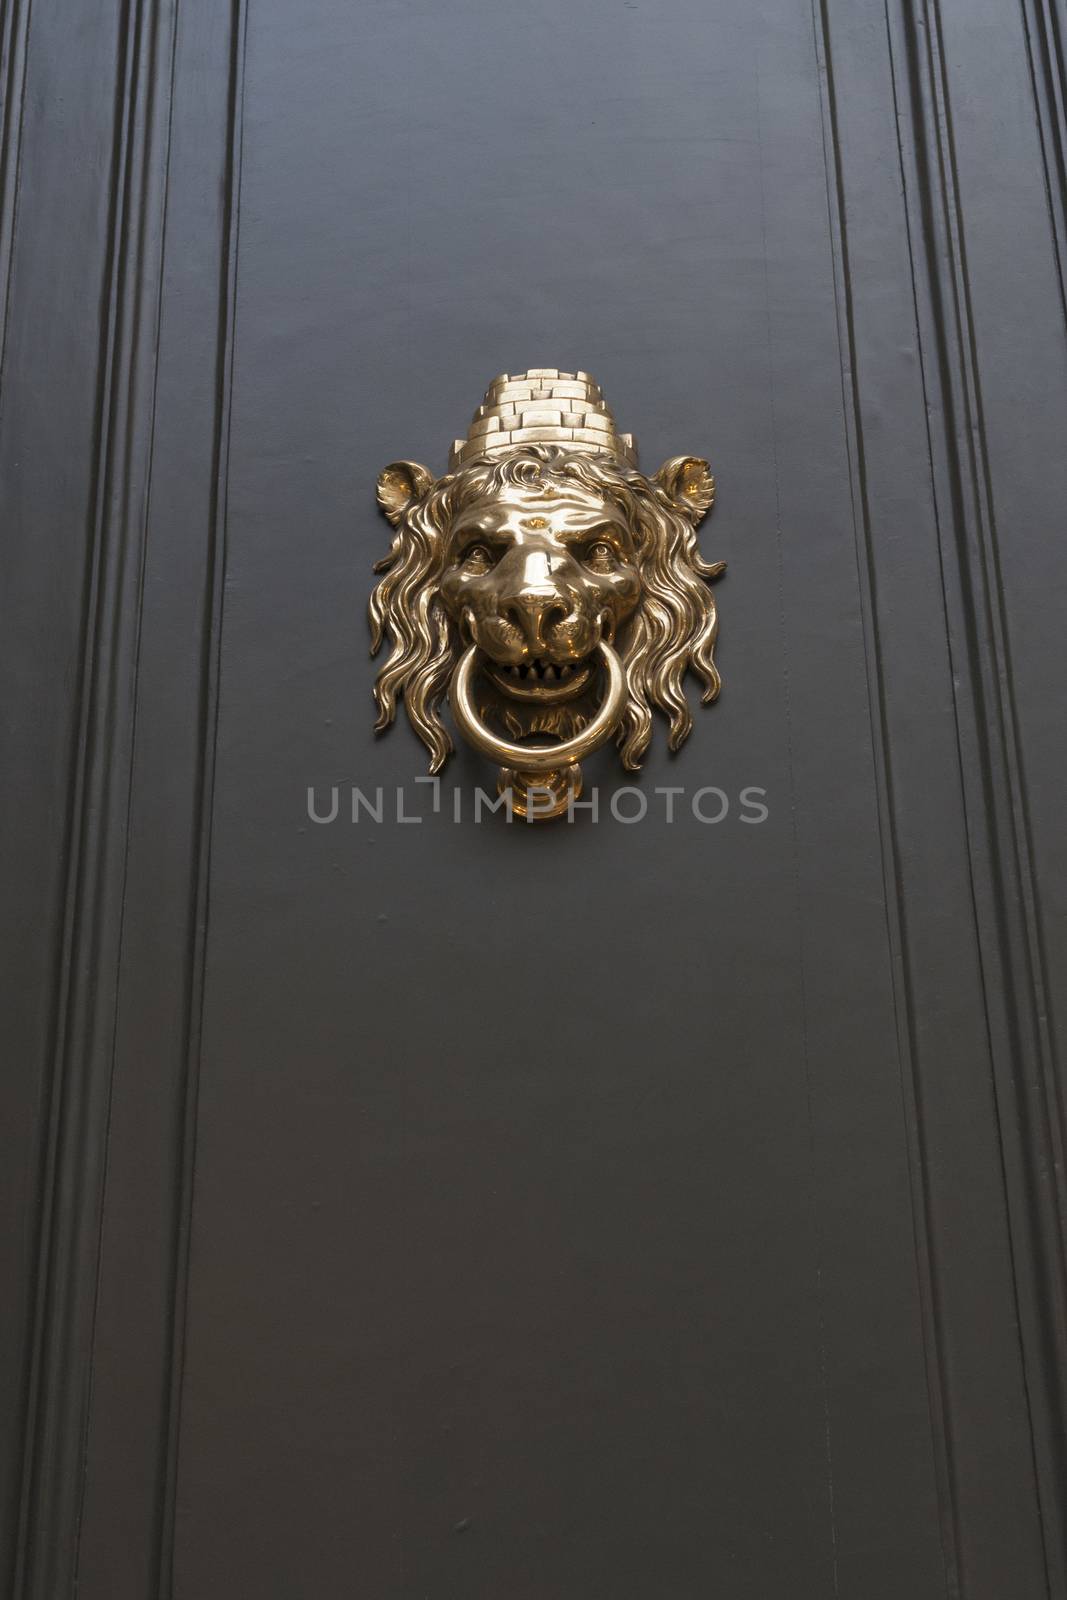 metallic door handle in shape of lion head with big knocking ring